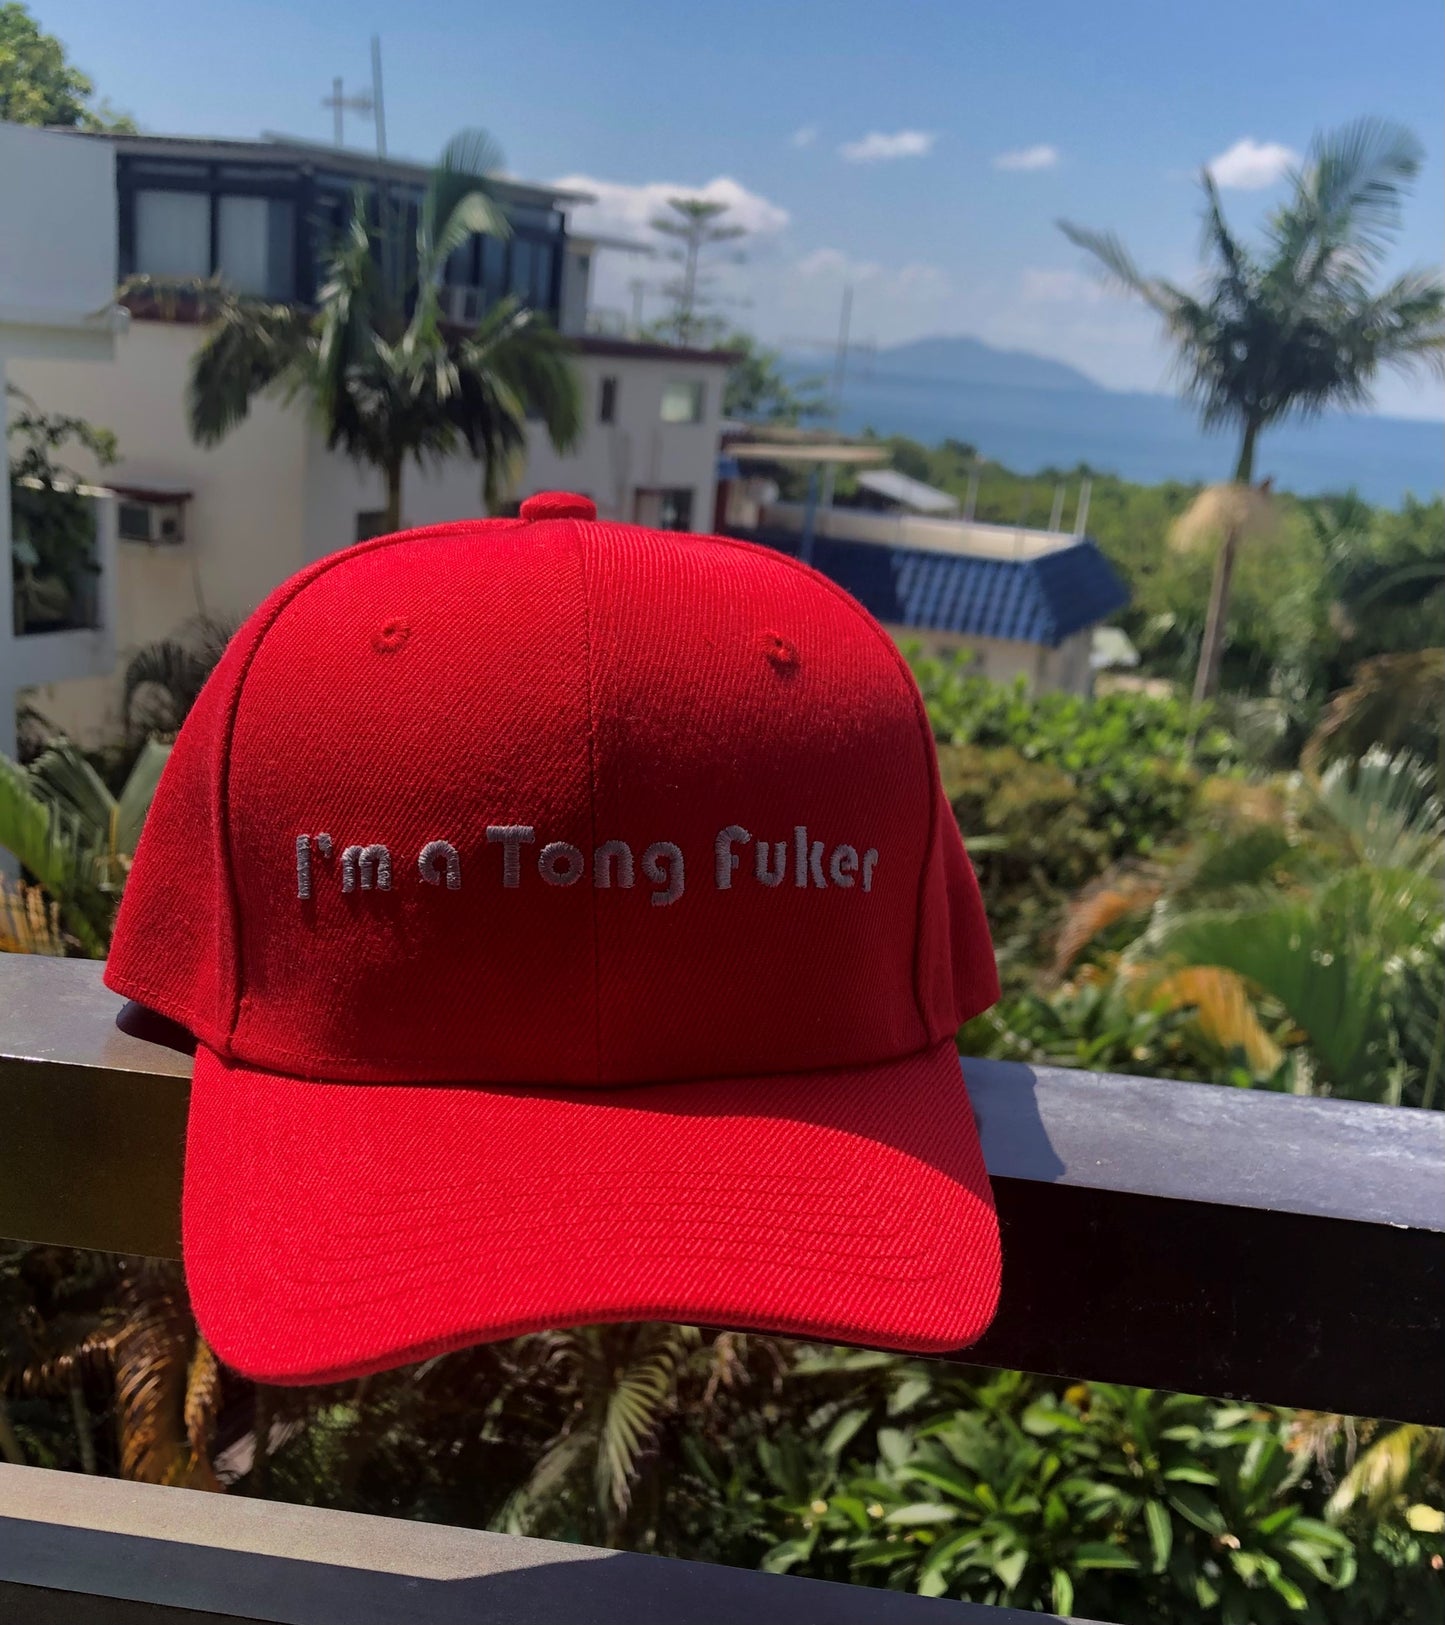 Tong Fuker Cap